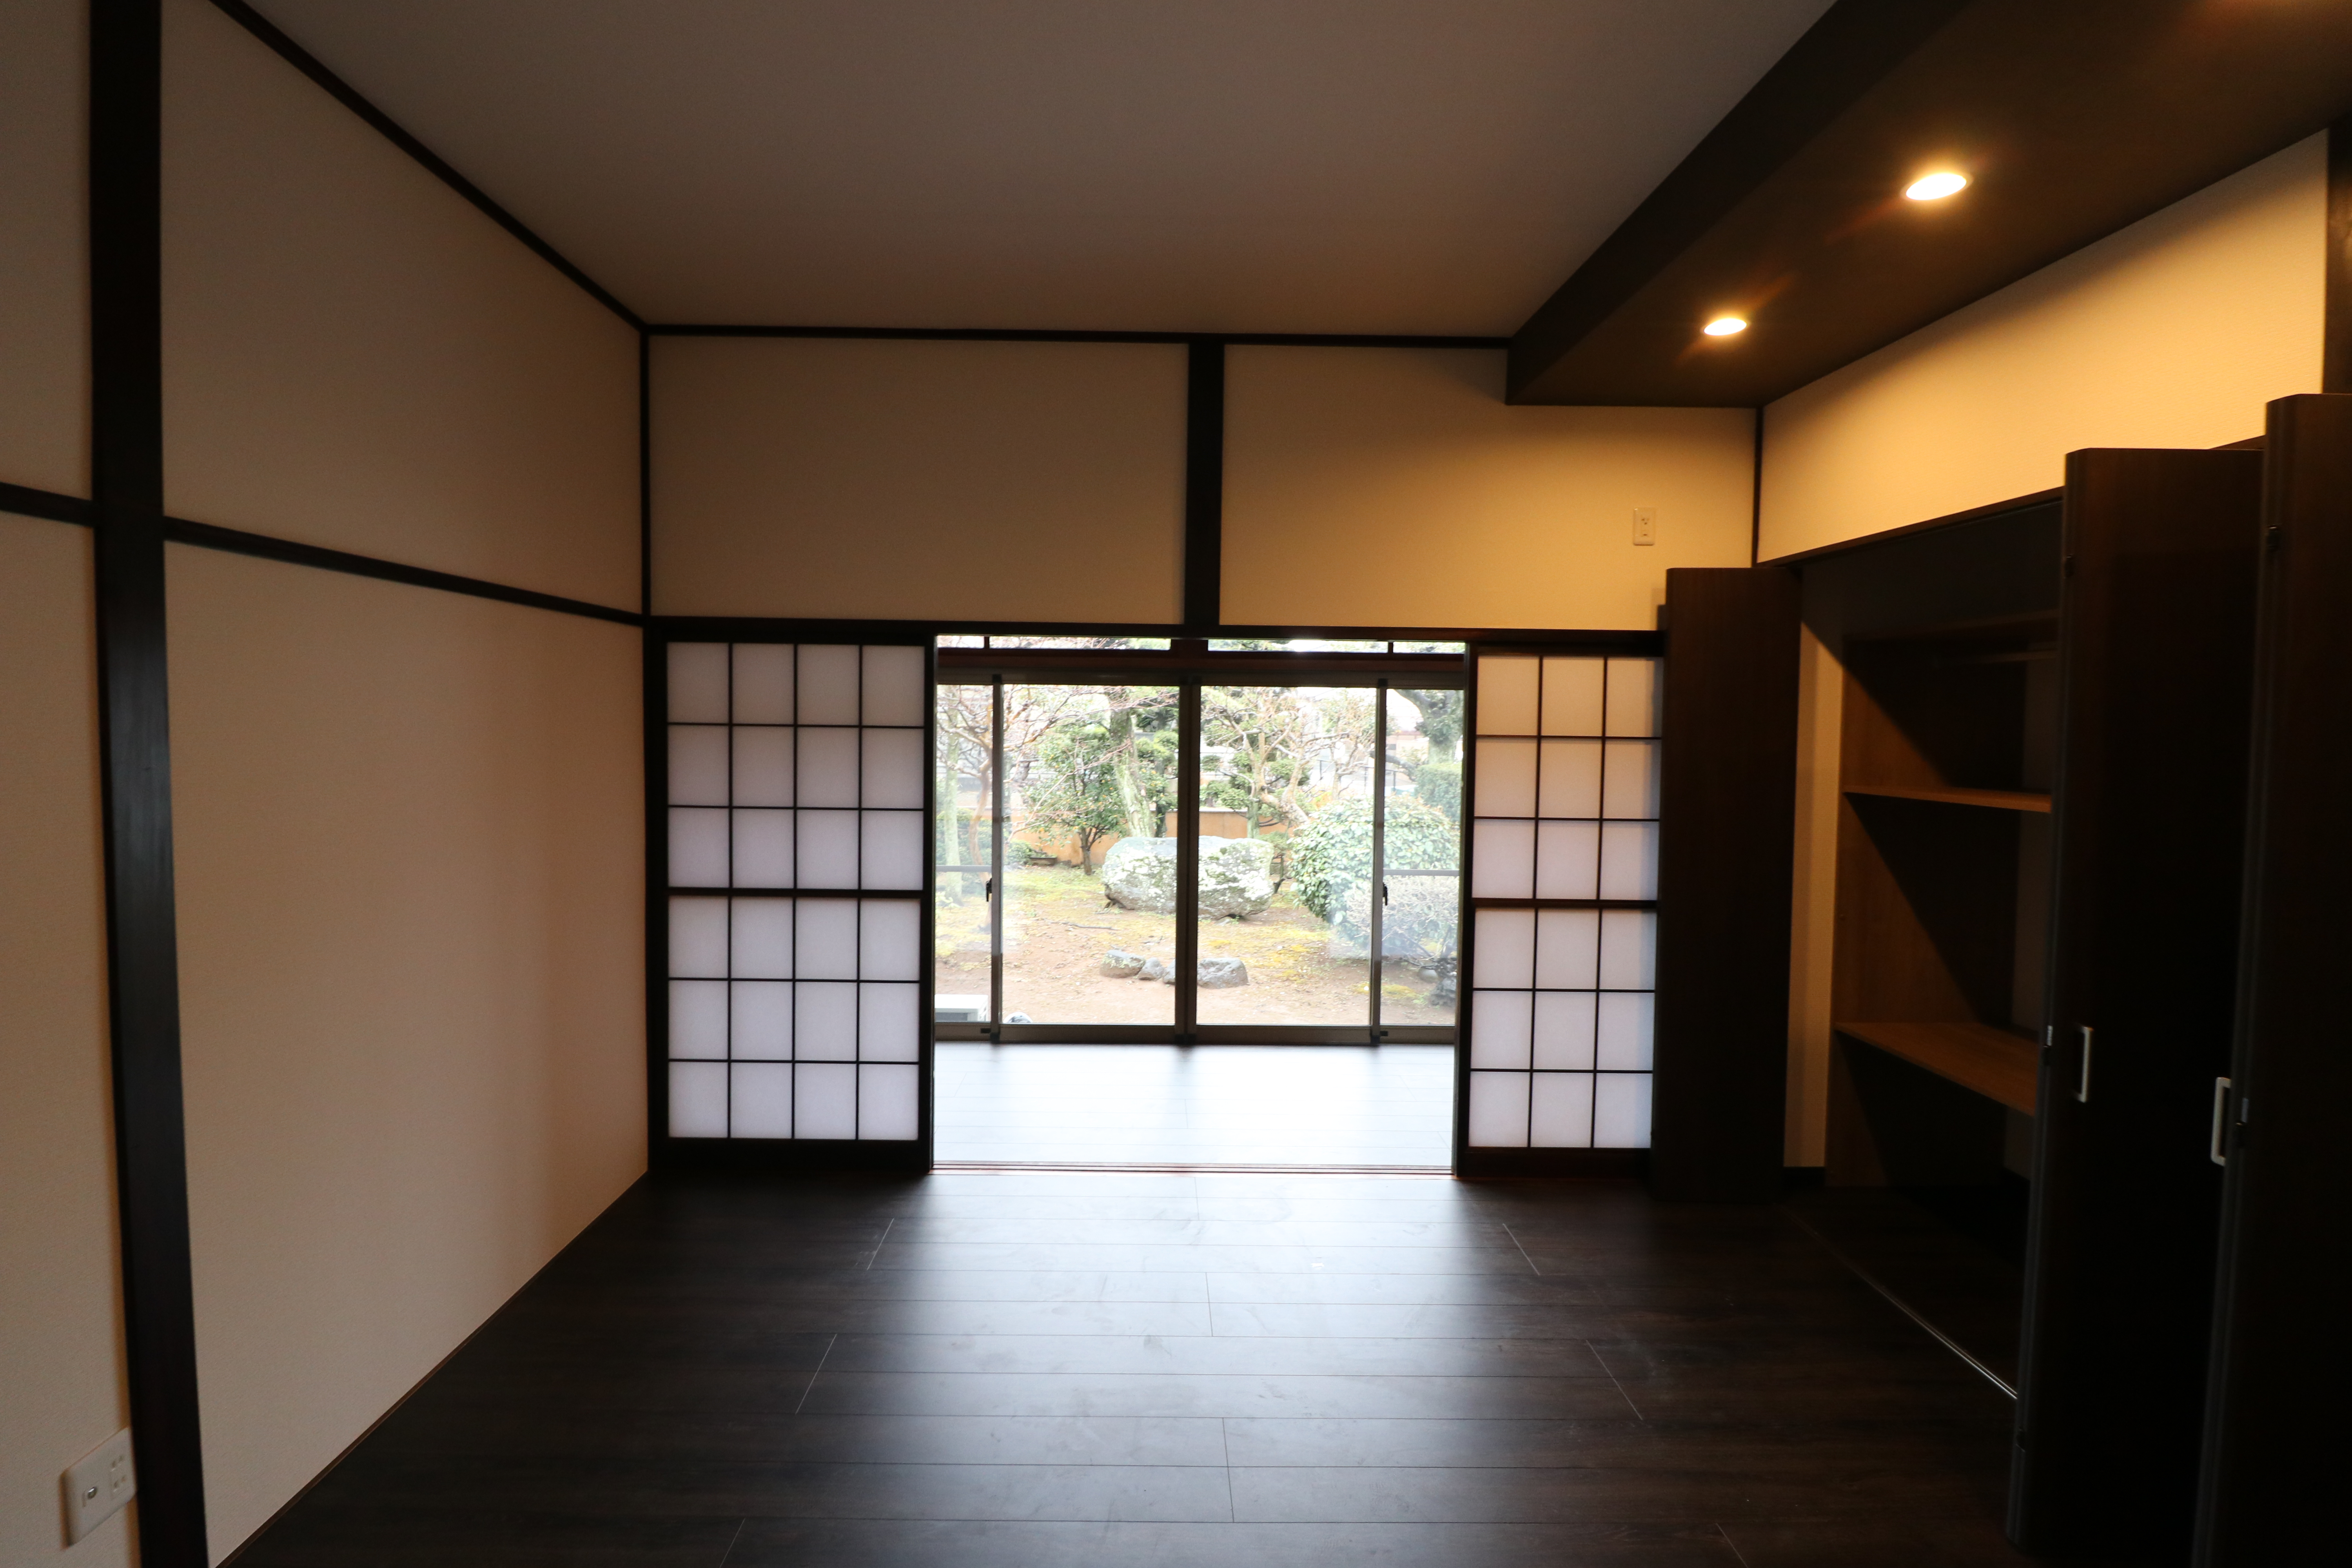 【埼玉県三郷市】K様邸和室から古民家風モダン和室に内装工事が完了しました。 画像